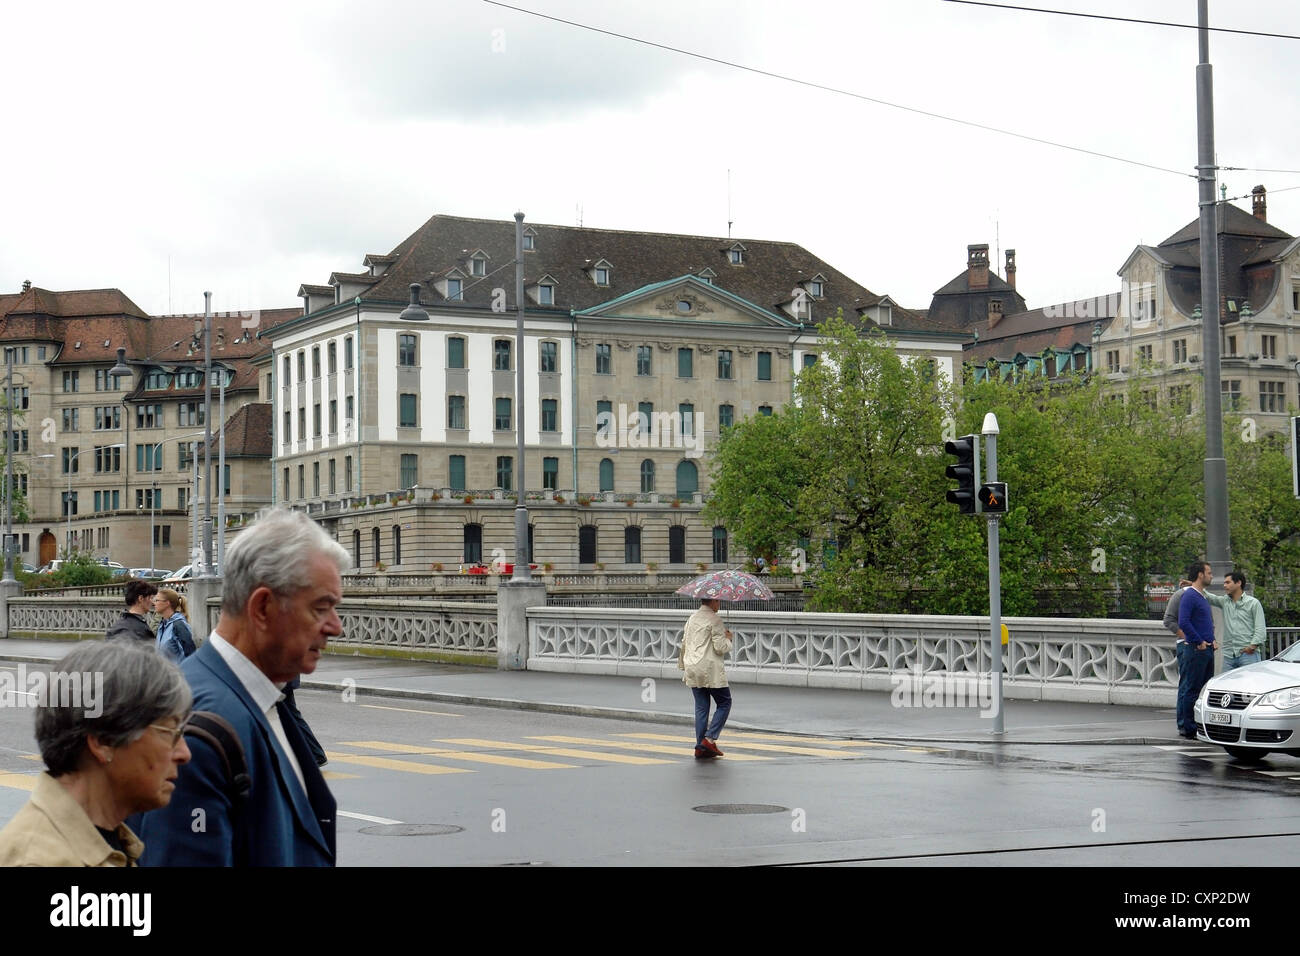 Menschen, darunter ein paar, über Brücke über den Fluss Limmat in Zürich. Vor kurzem hatte es geregnet, so die Menschen etwa weniger waren. Stockfoto